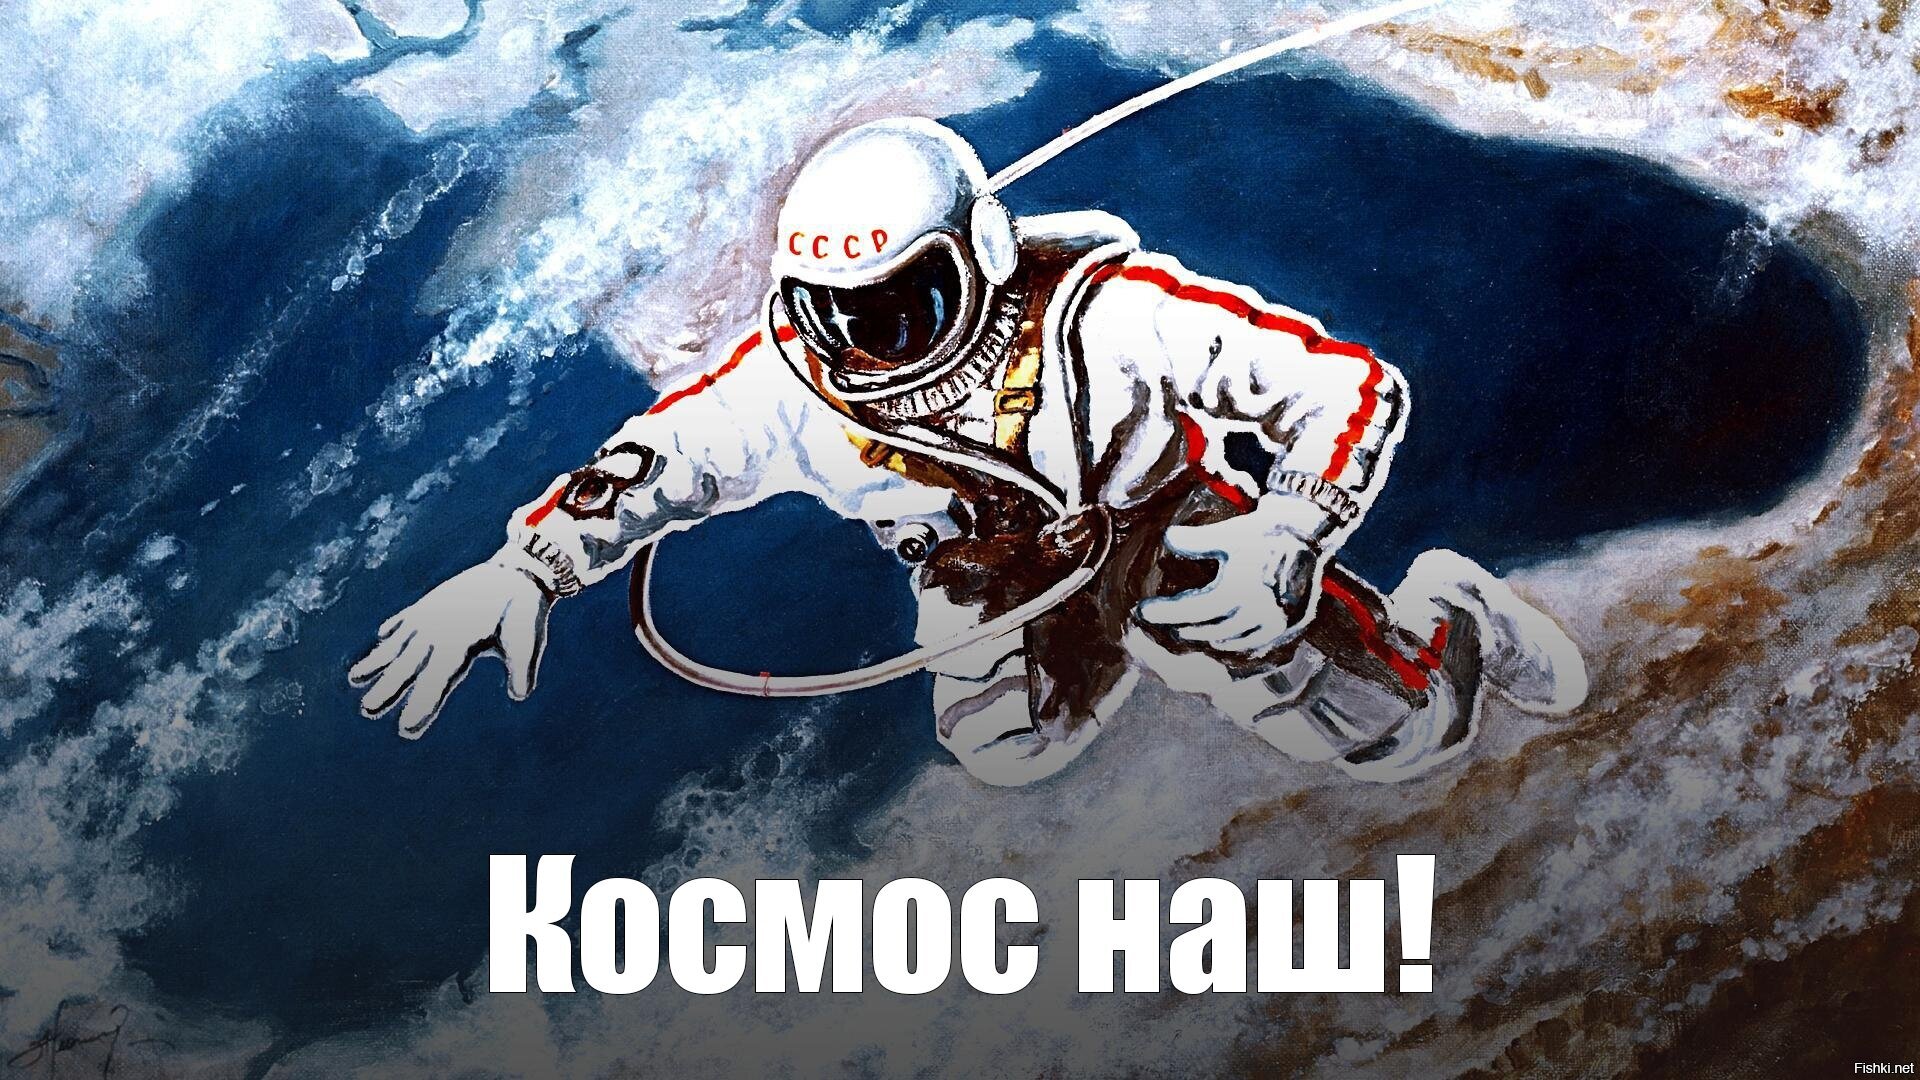 Первый выход человека в космическое пространство. Картина Алексея Леонова над черным морем.